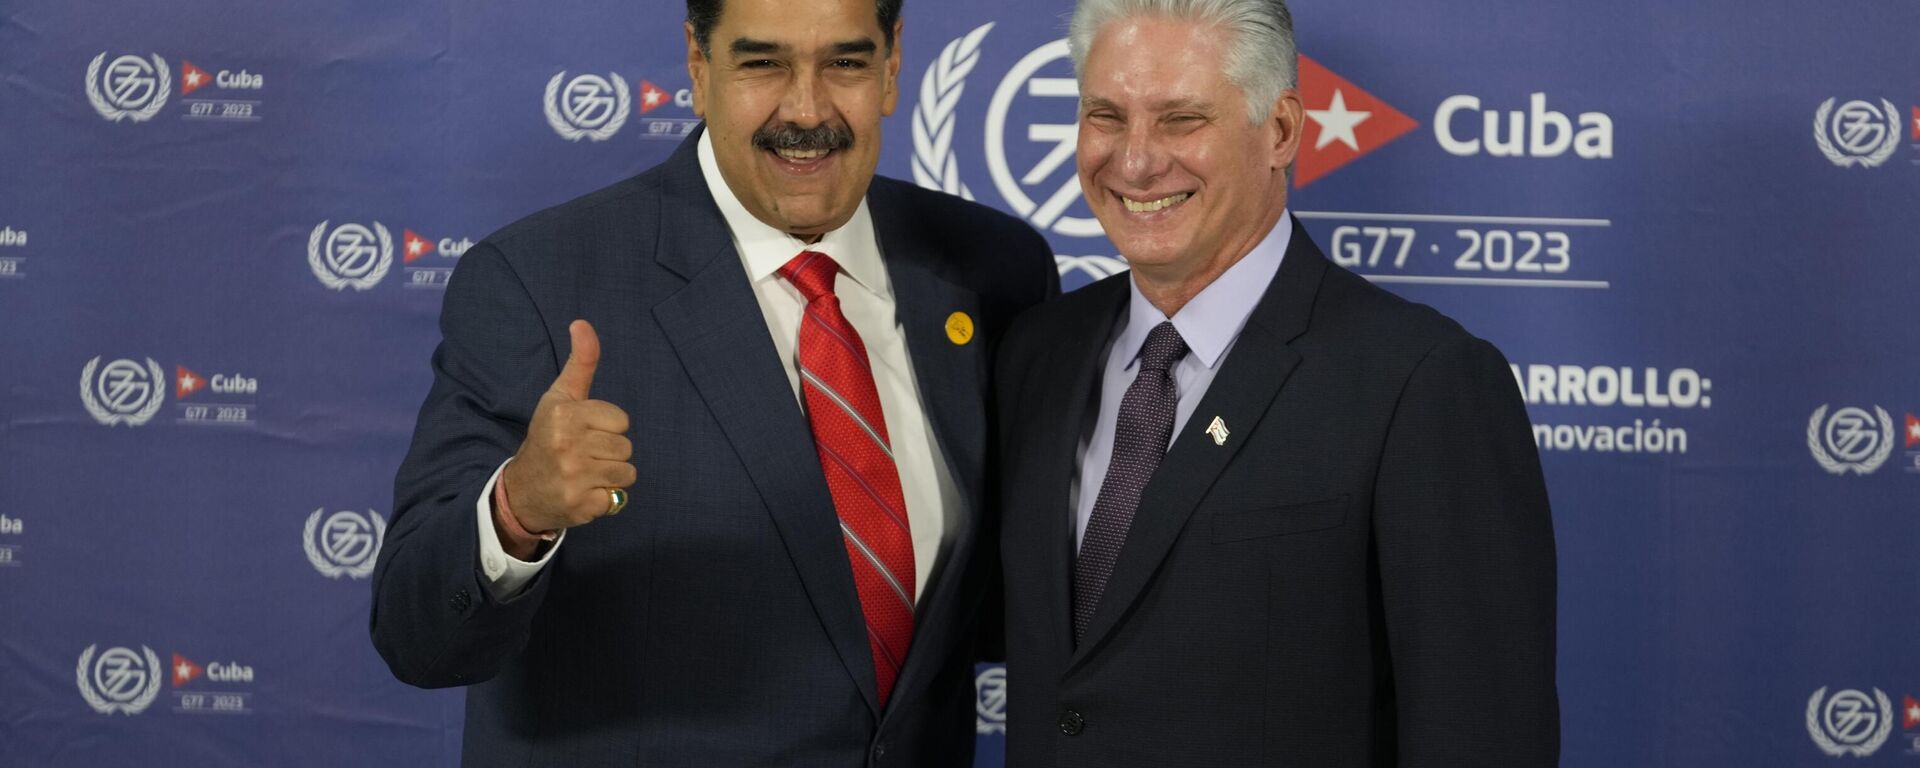 Nicolás Maduro y Miguel Díaz-Canel  - Sputnik Mundo, 1920, 19.09.2023